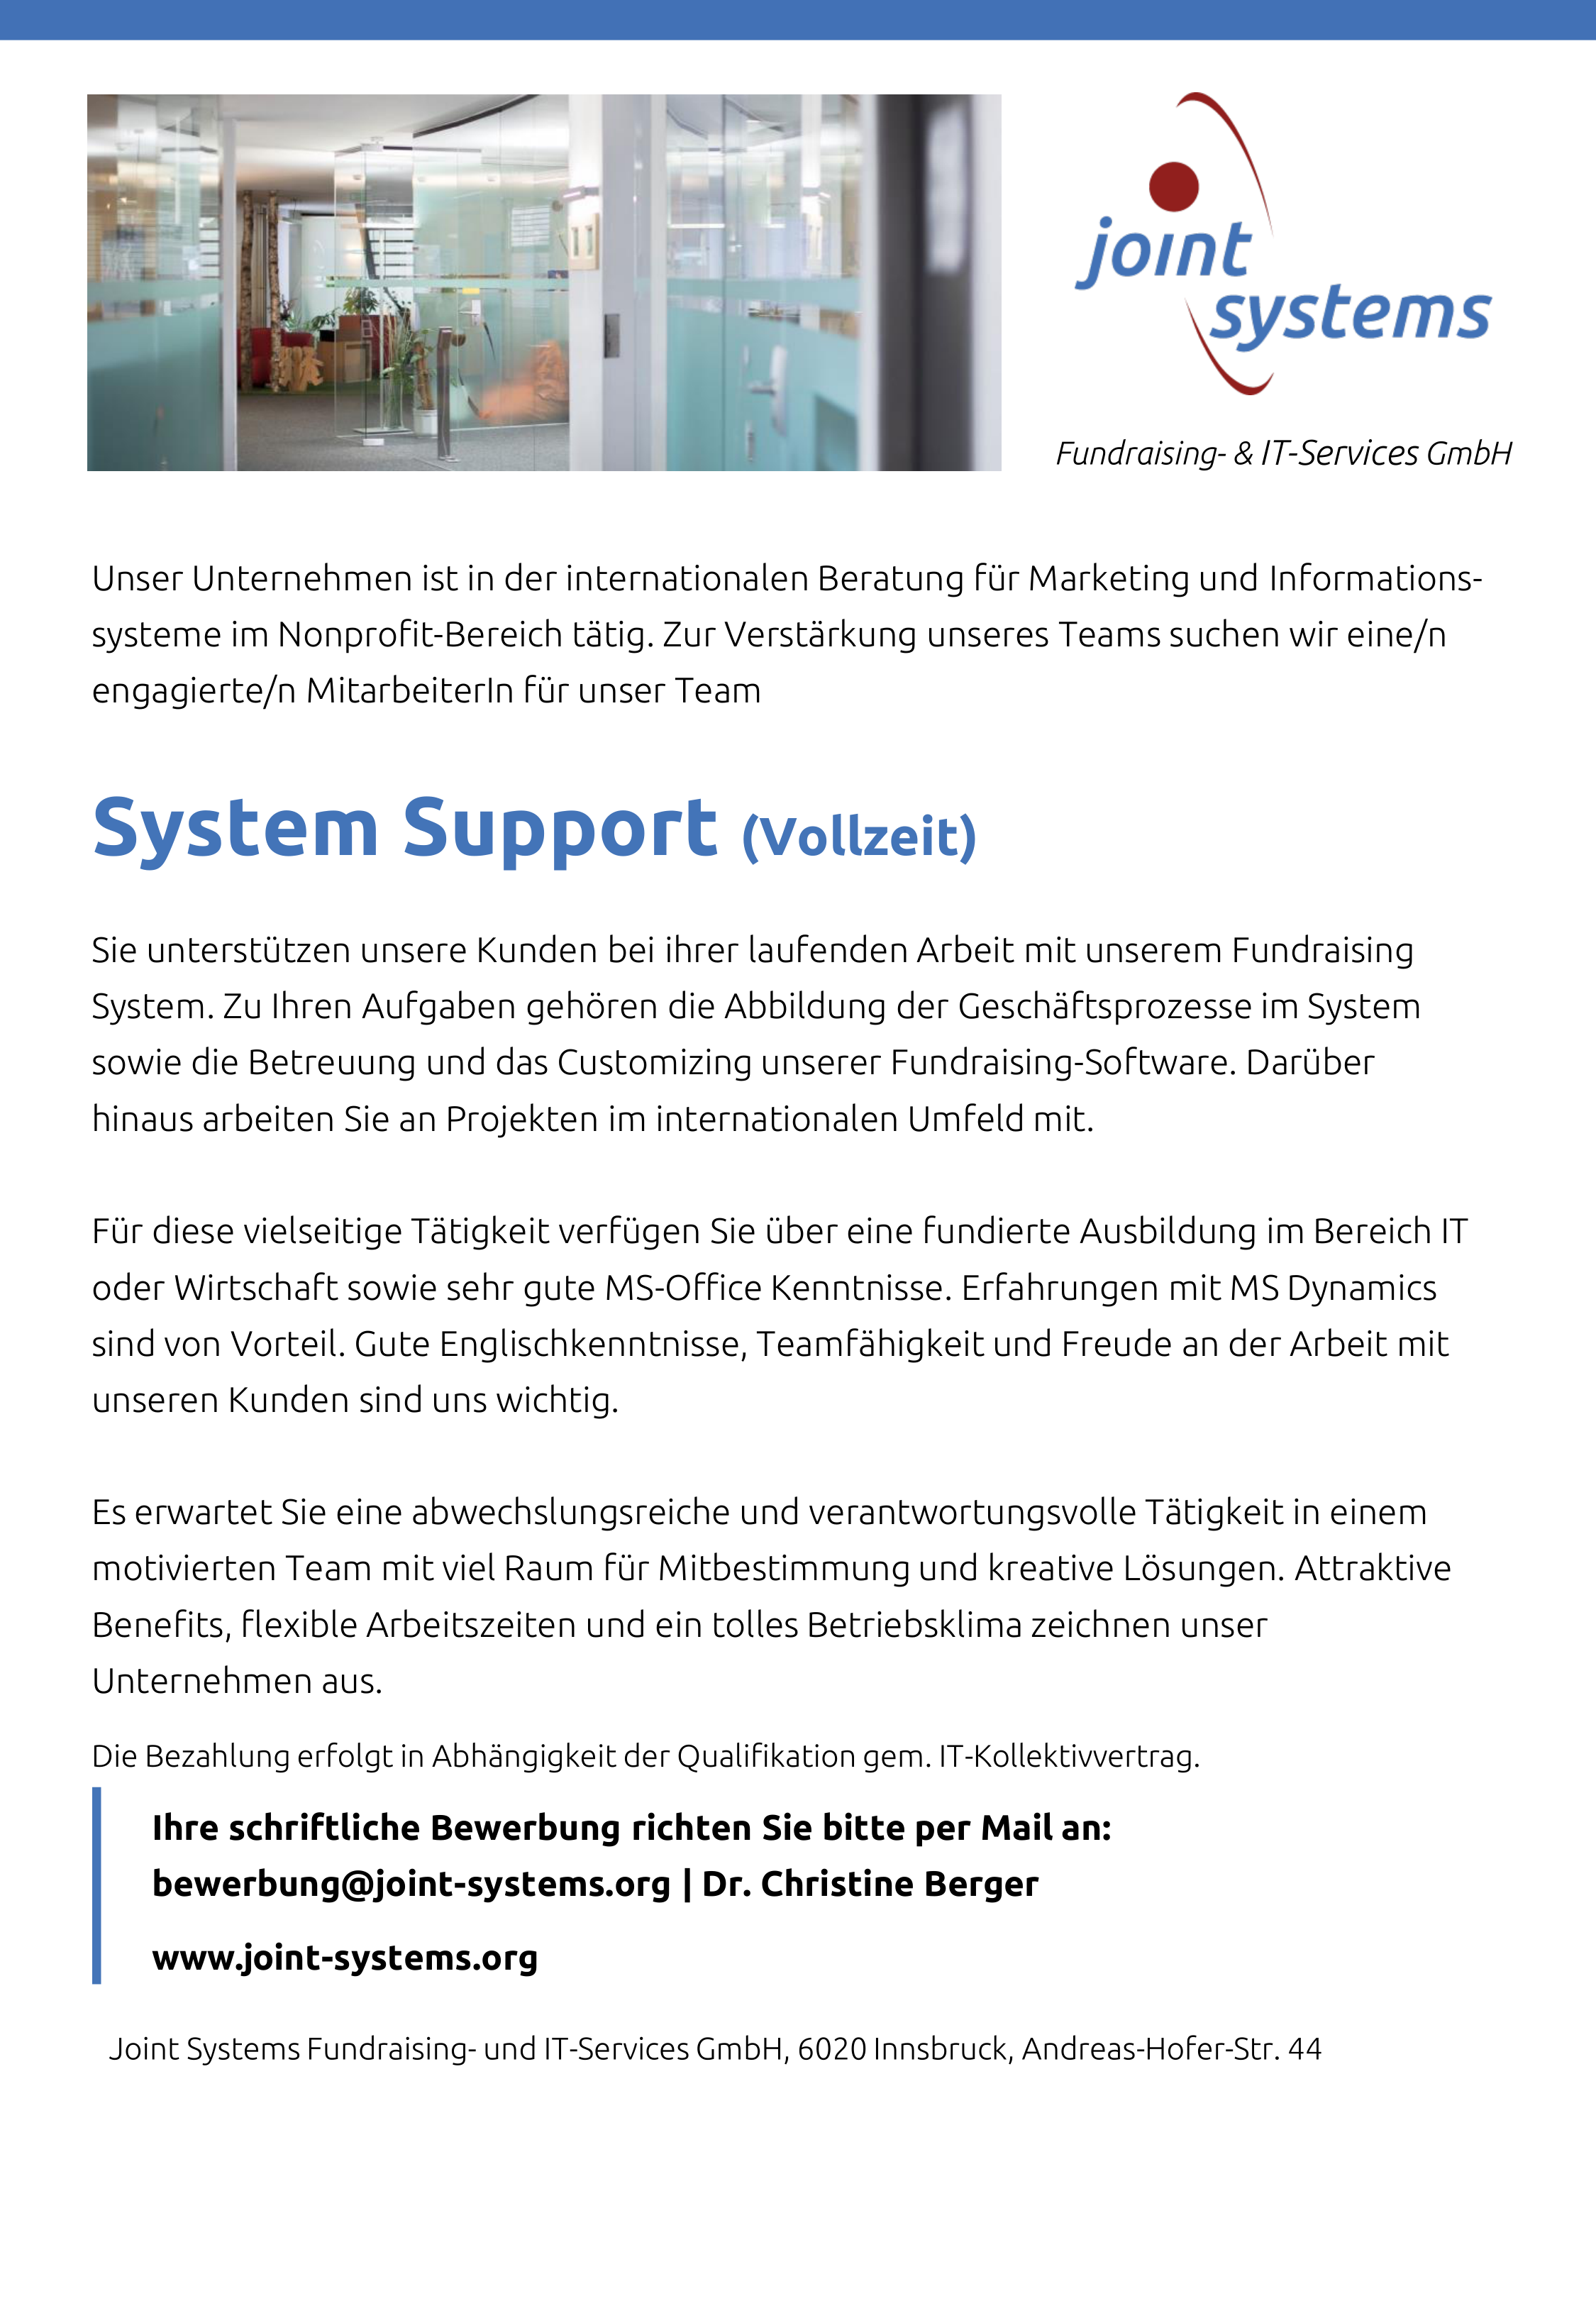 System Support (Vollzeit)